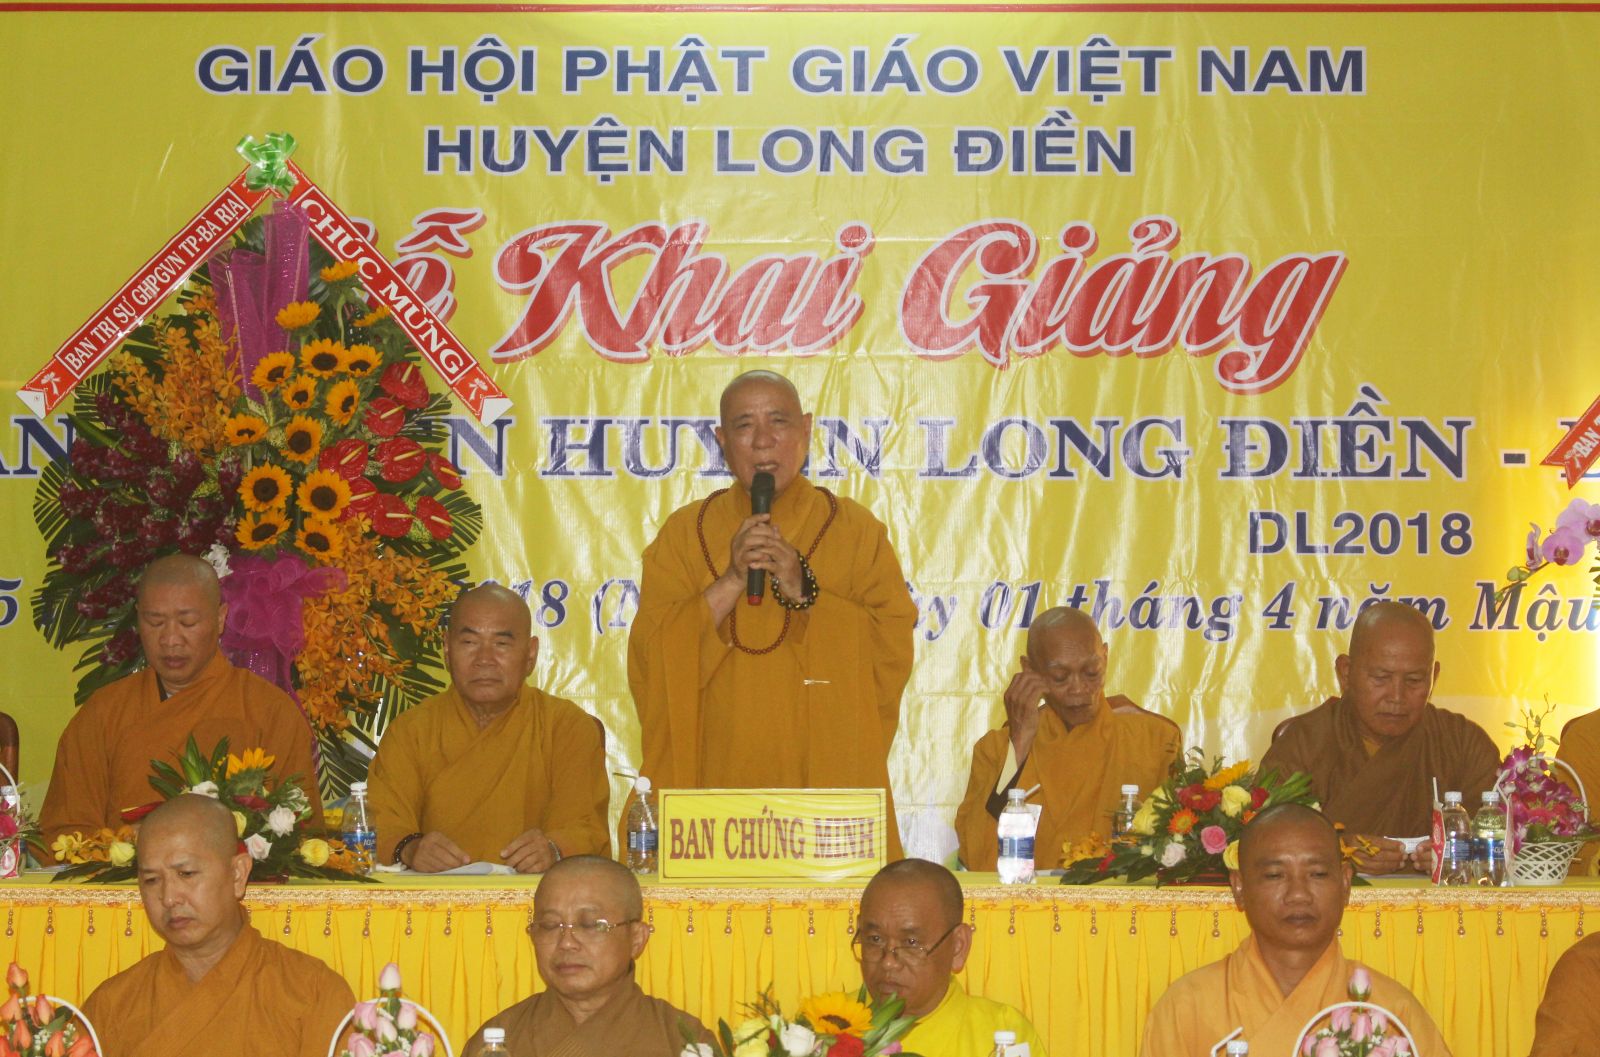 Phật Giáo Long Điền: Kế Hoạch An Cư Kiết Hạ PL.2563 - DL. 2019